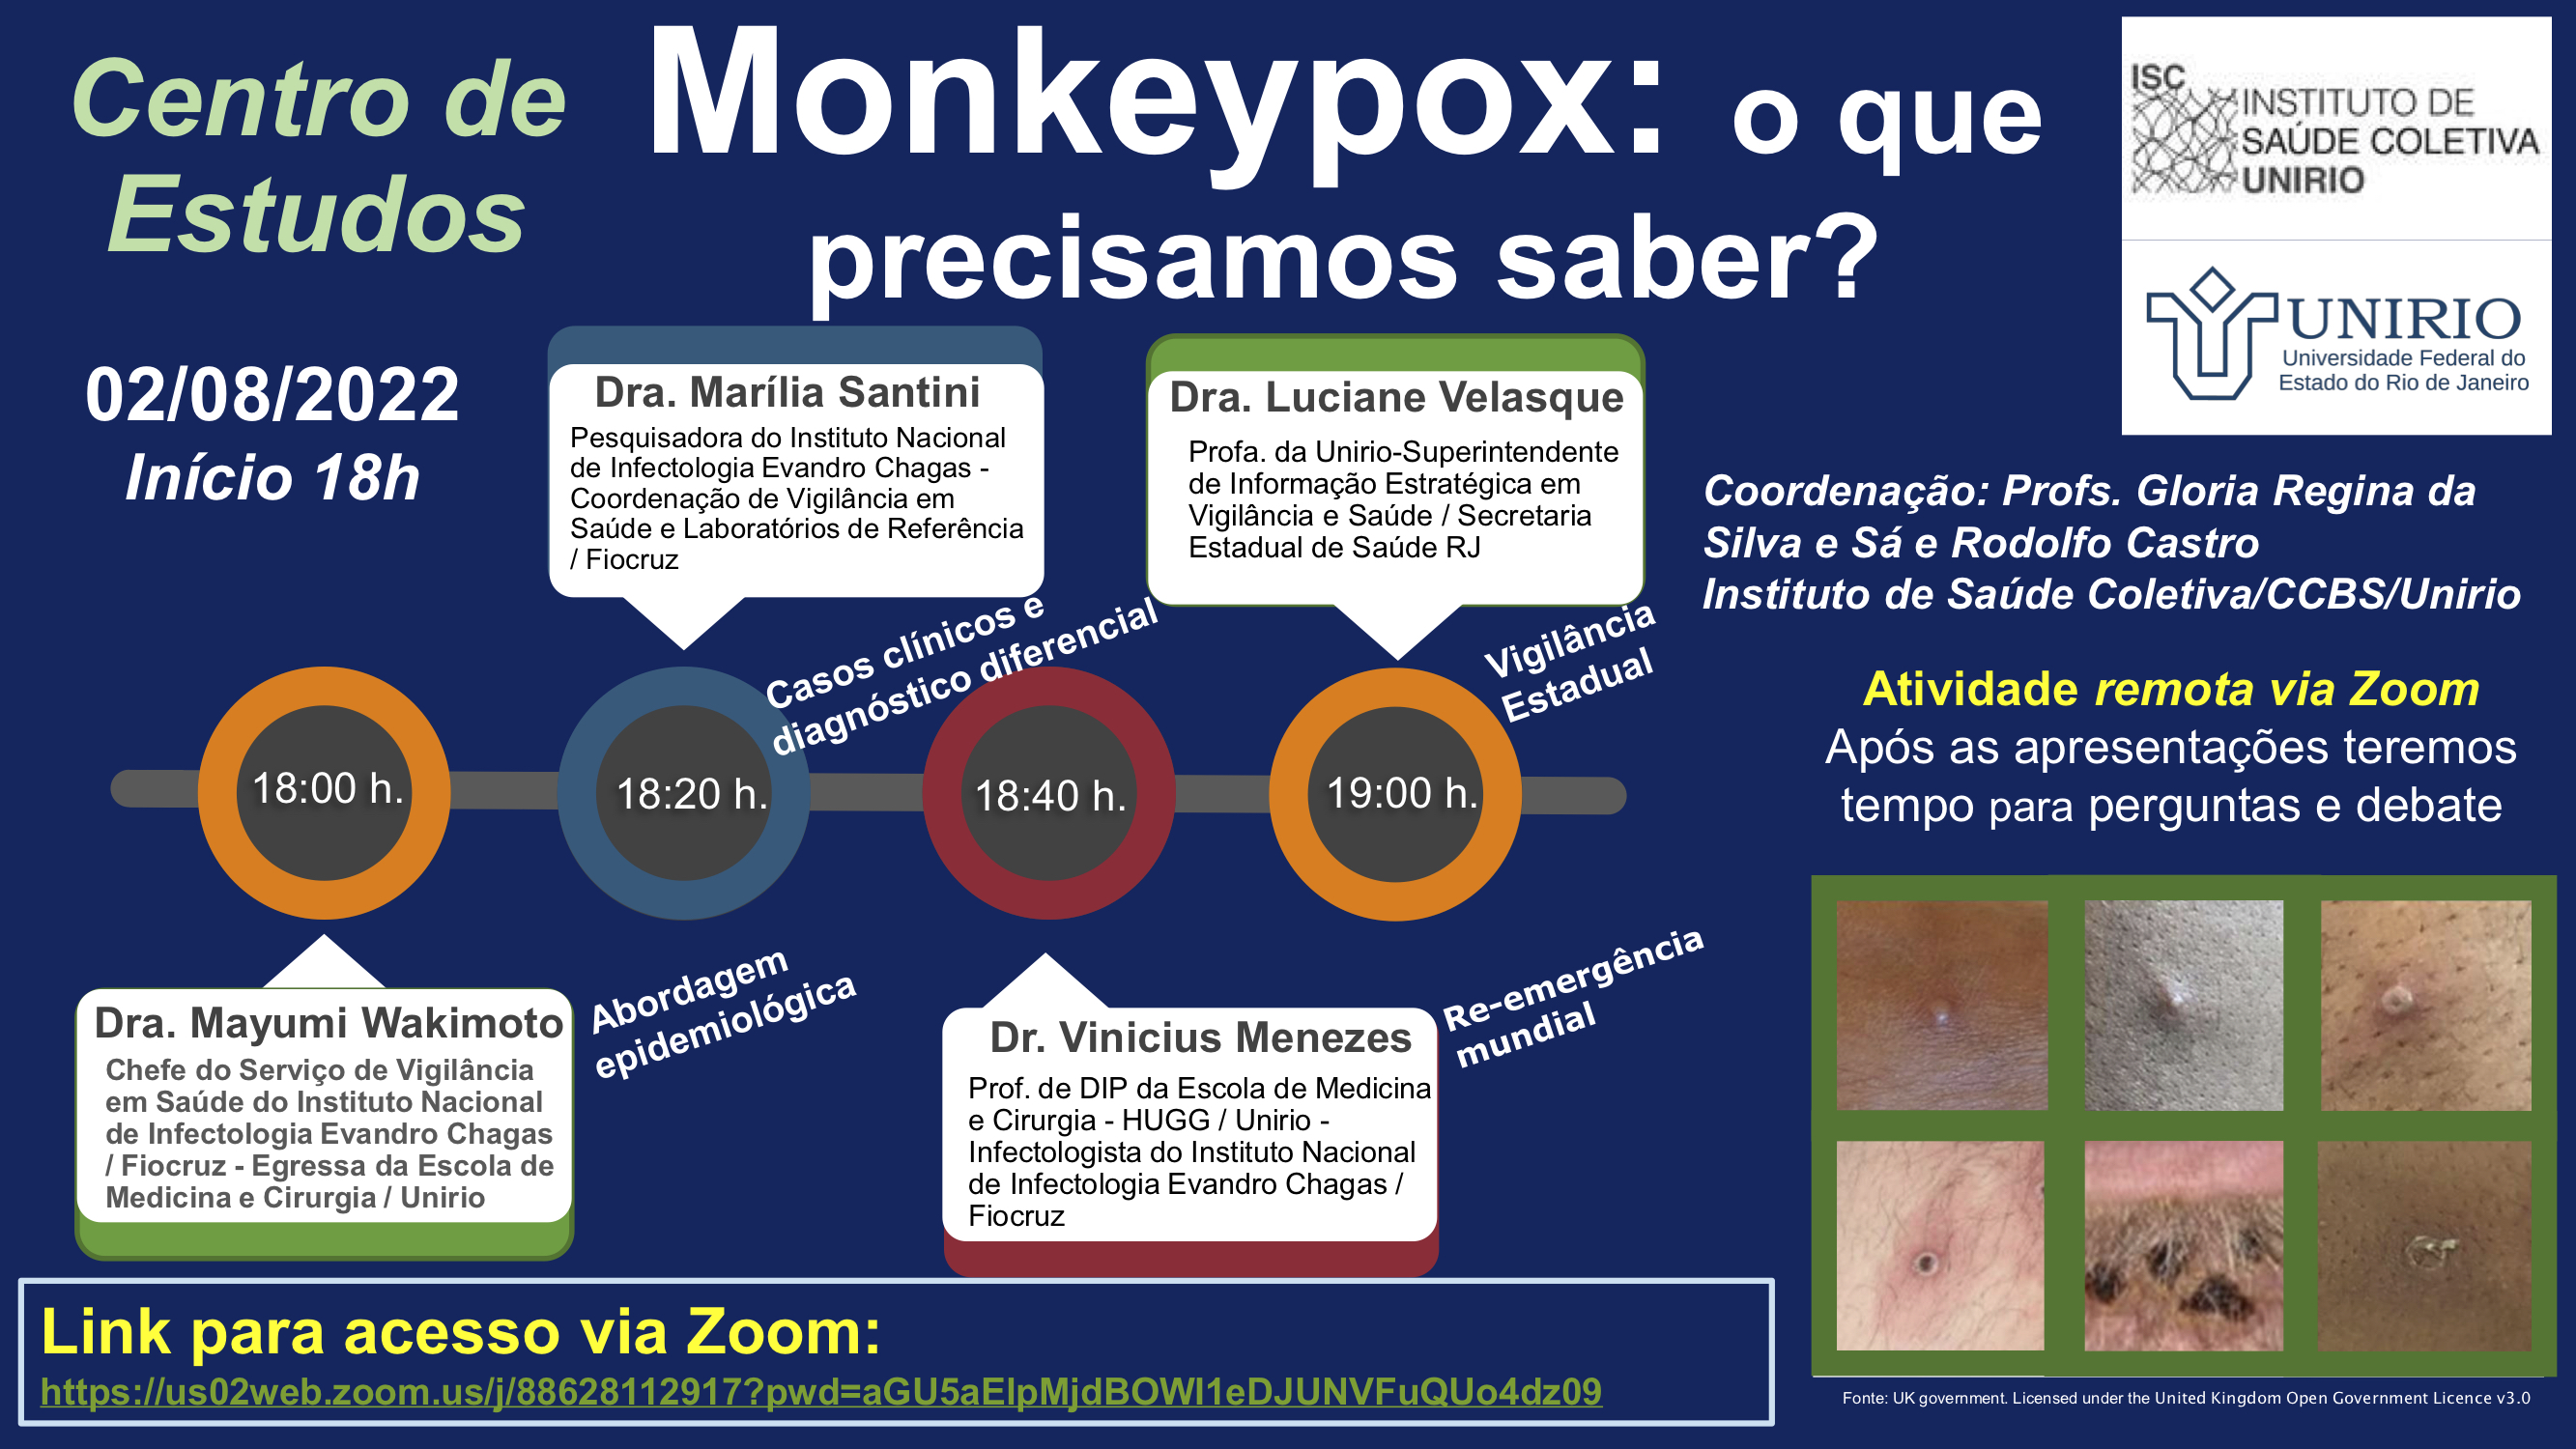 Monkeypox debate